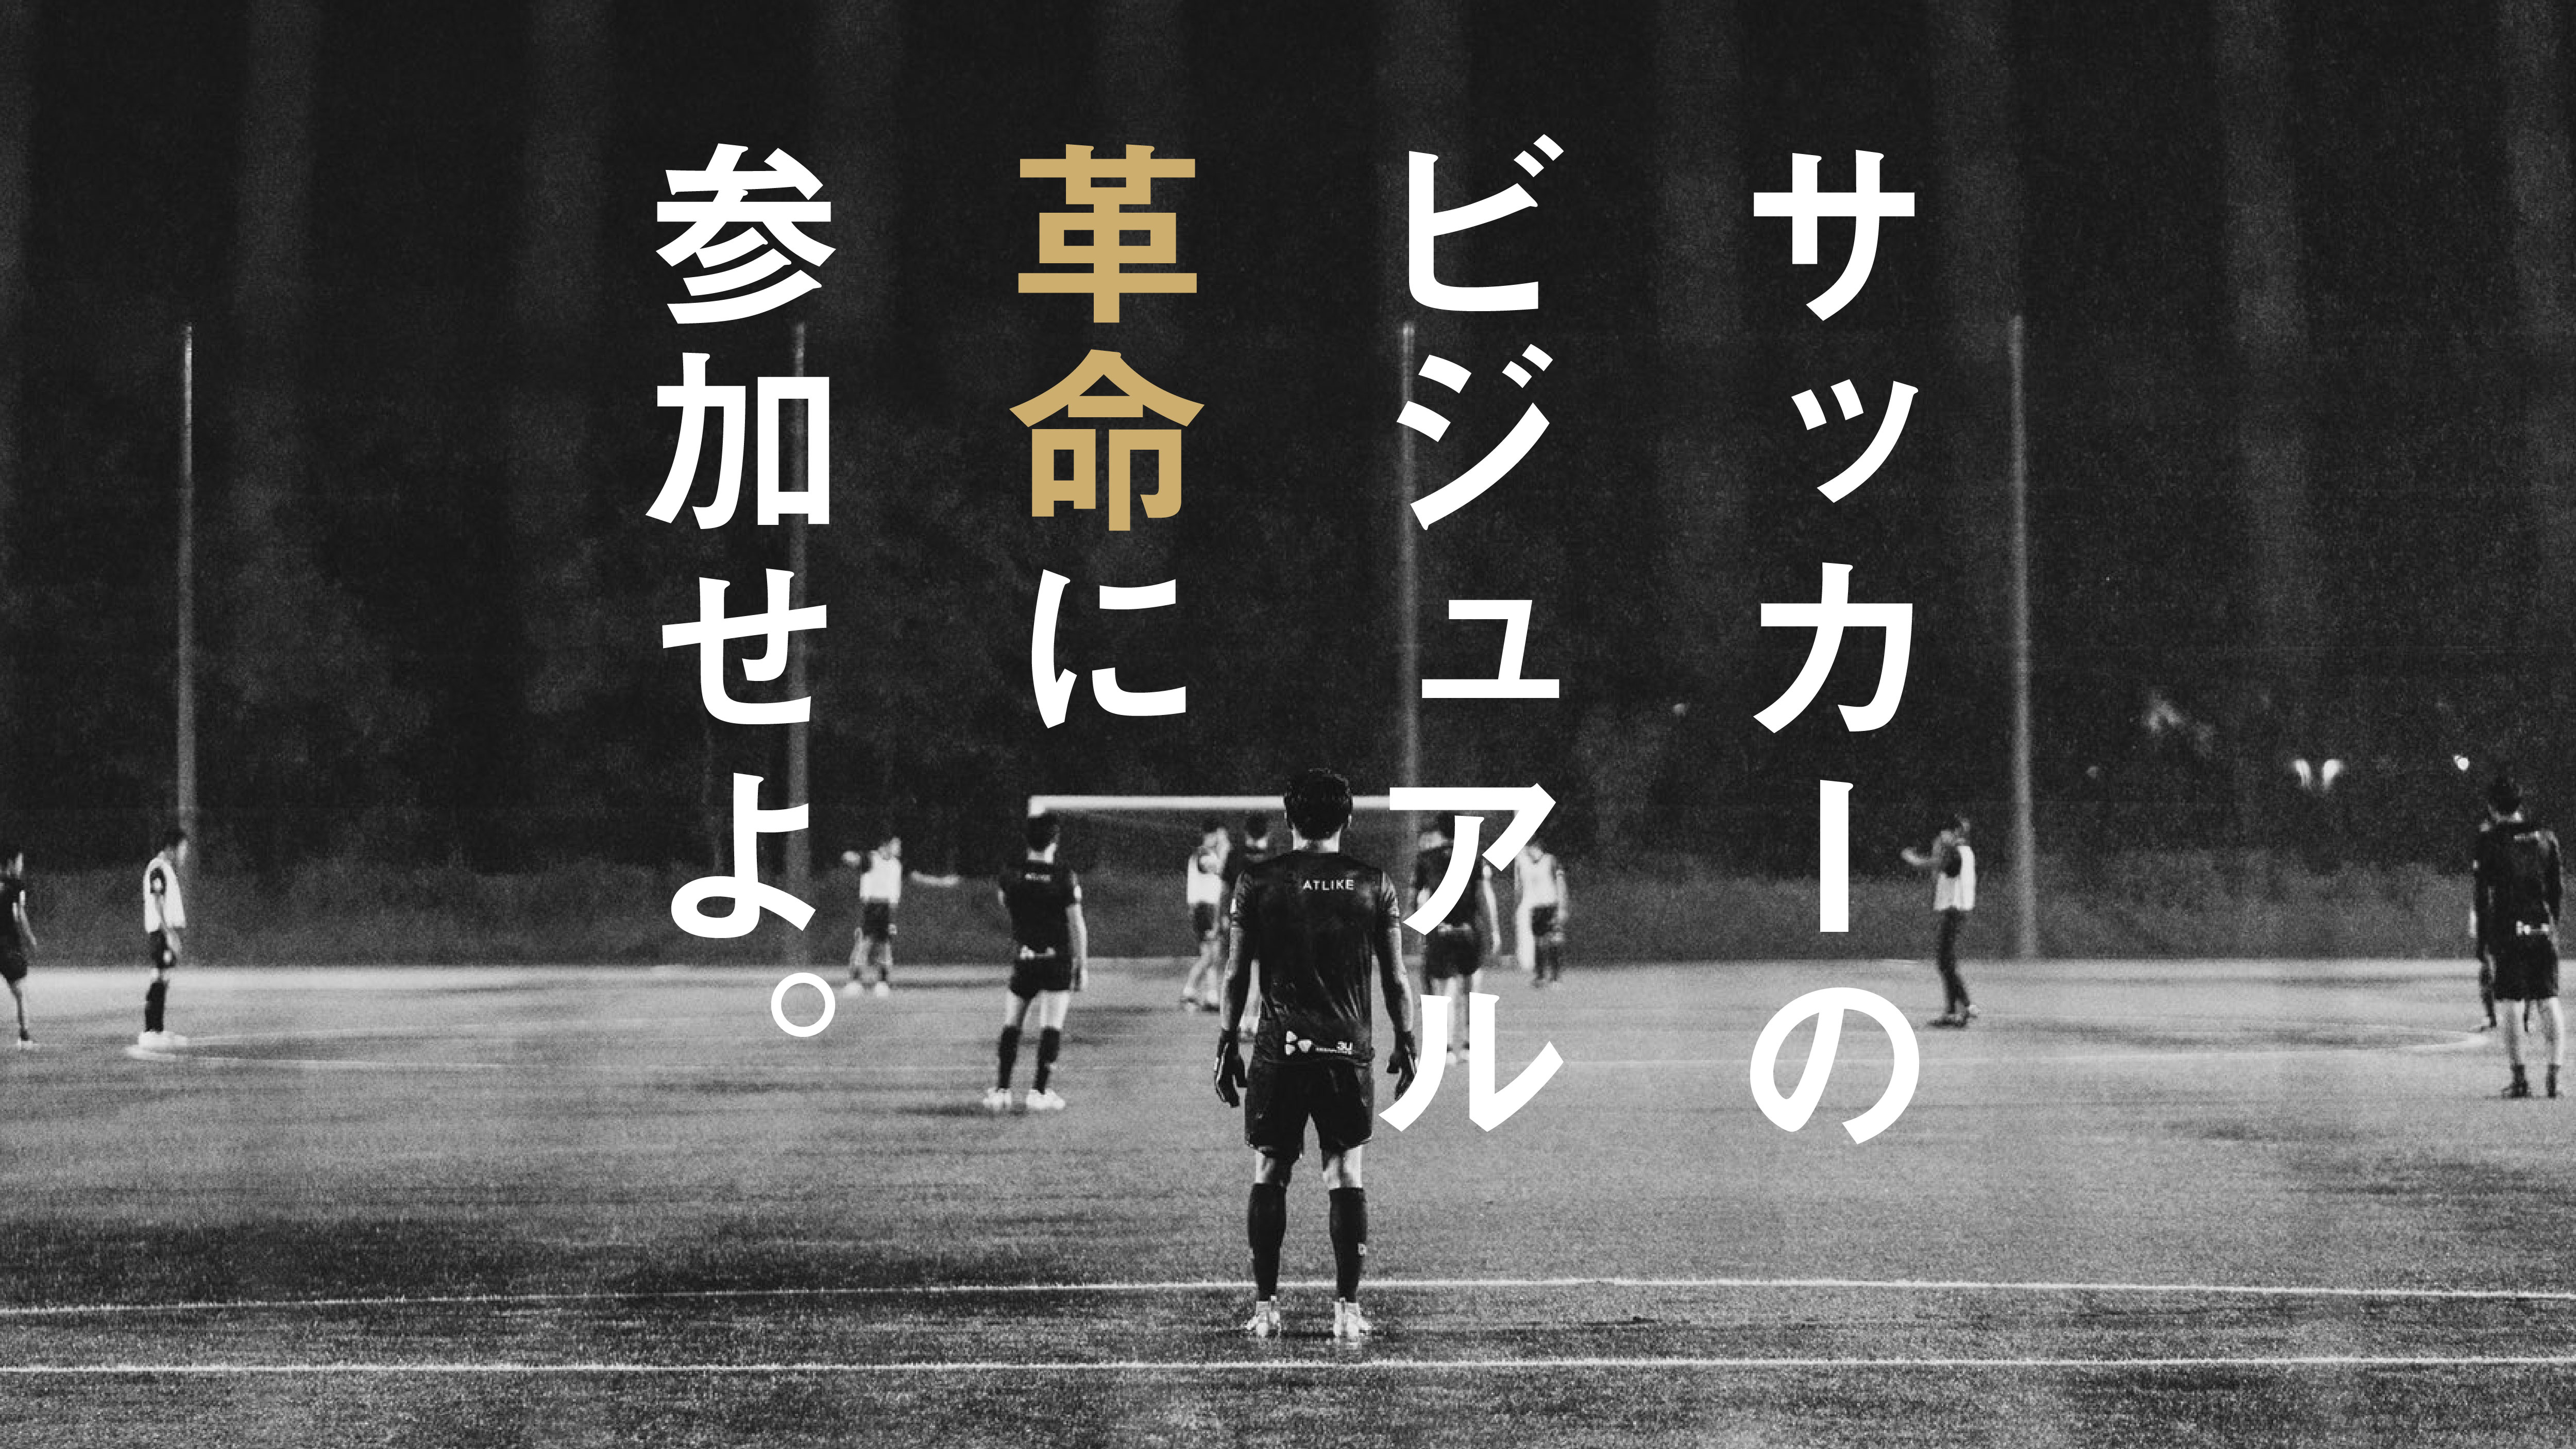 世界のスポーツシーンを牽引する“クール”なサッカークラブを鎌倉に